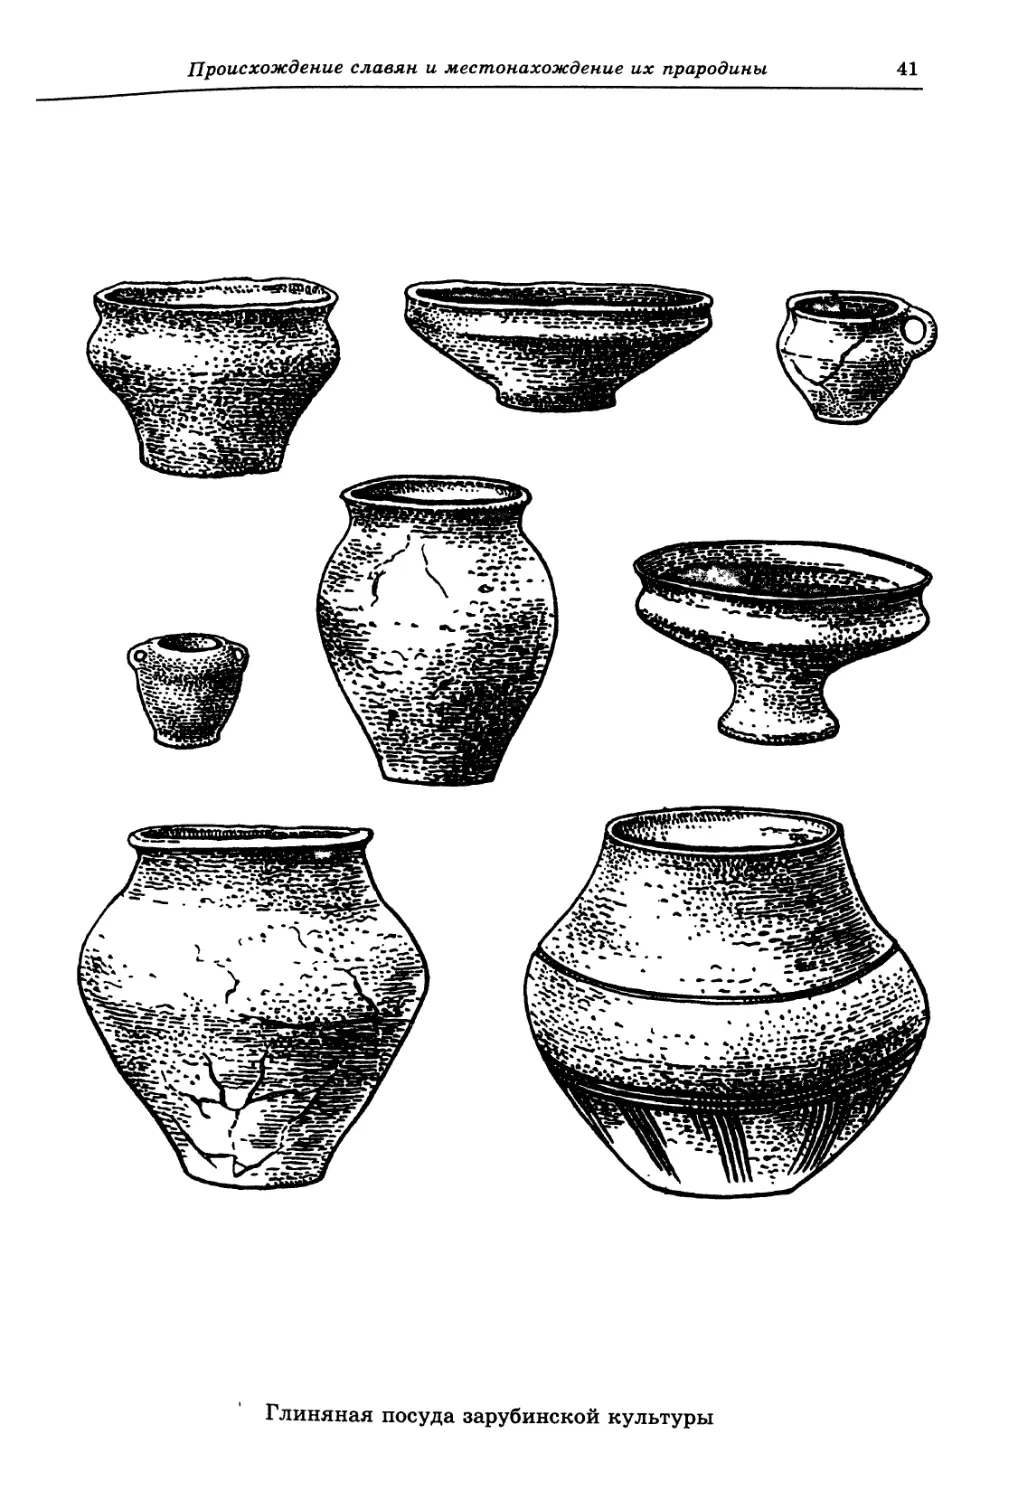 Киевская археологическая культура керамика